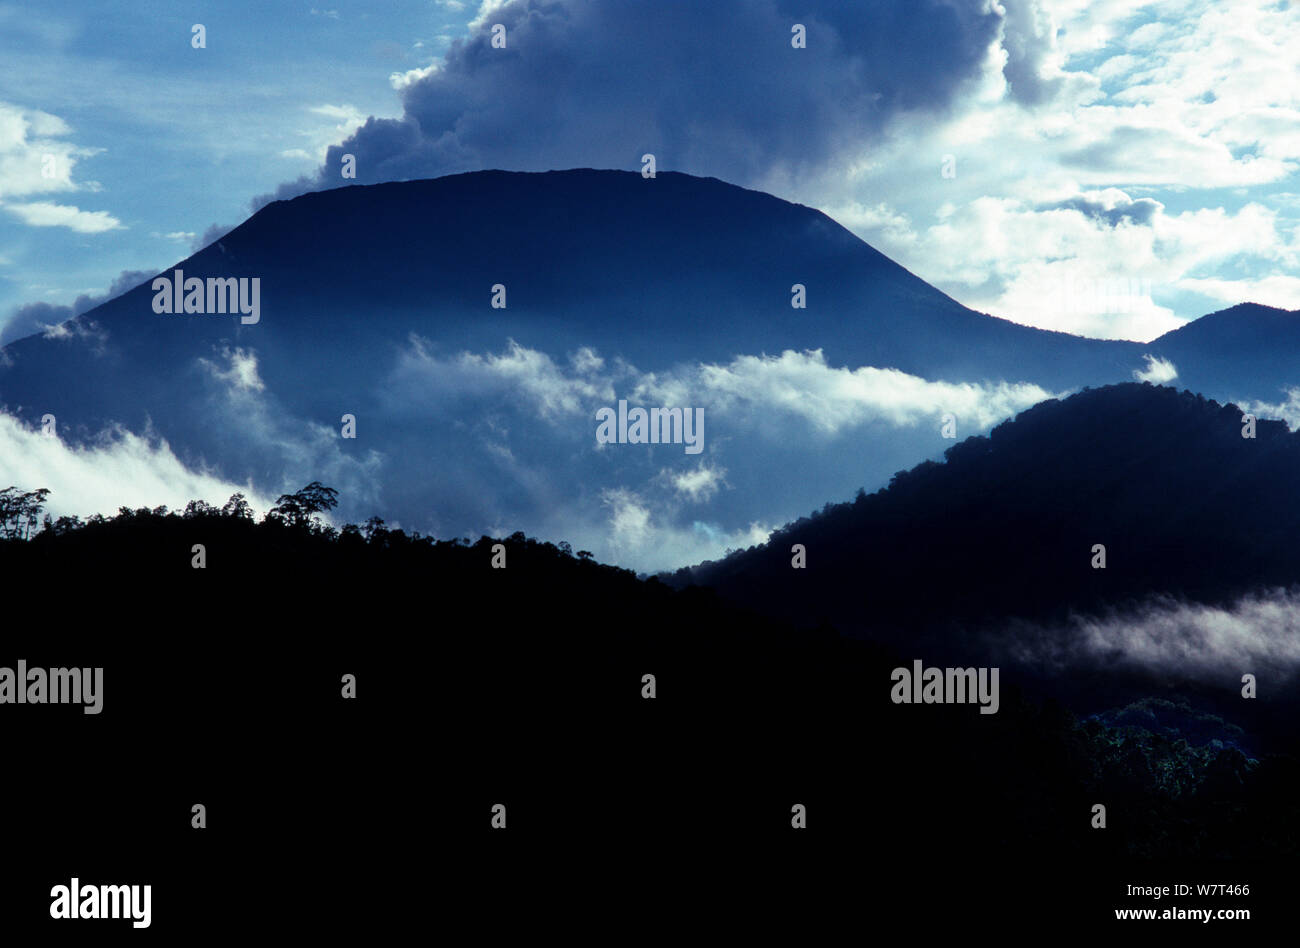 El Nyiragongo - fumar volcán activo en el sector sur del Parque Nacional de Virunga. Uno de varios volcanes activos en &#39;el macizo de Virunga Volcán Gama&#39;, República Democrática del Congo. Septiembre 1993 Foto de stock